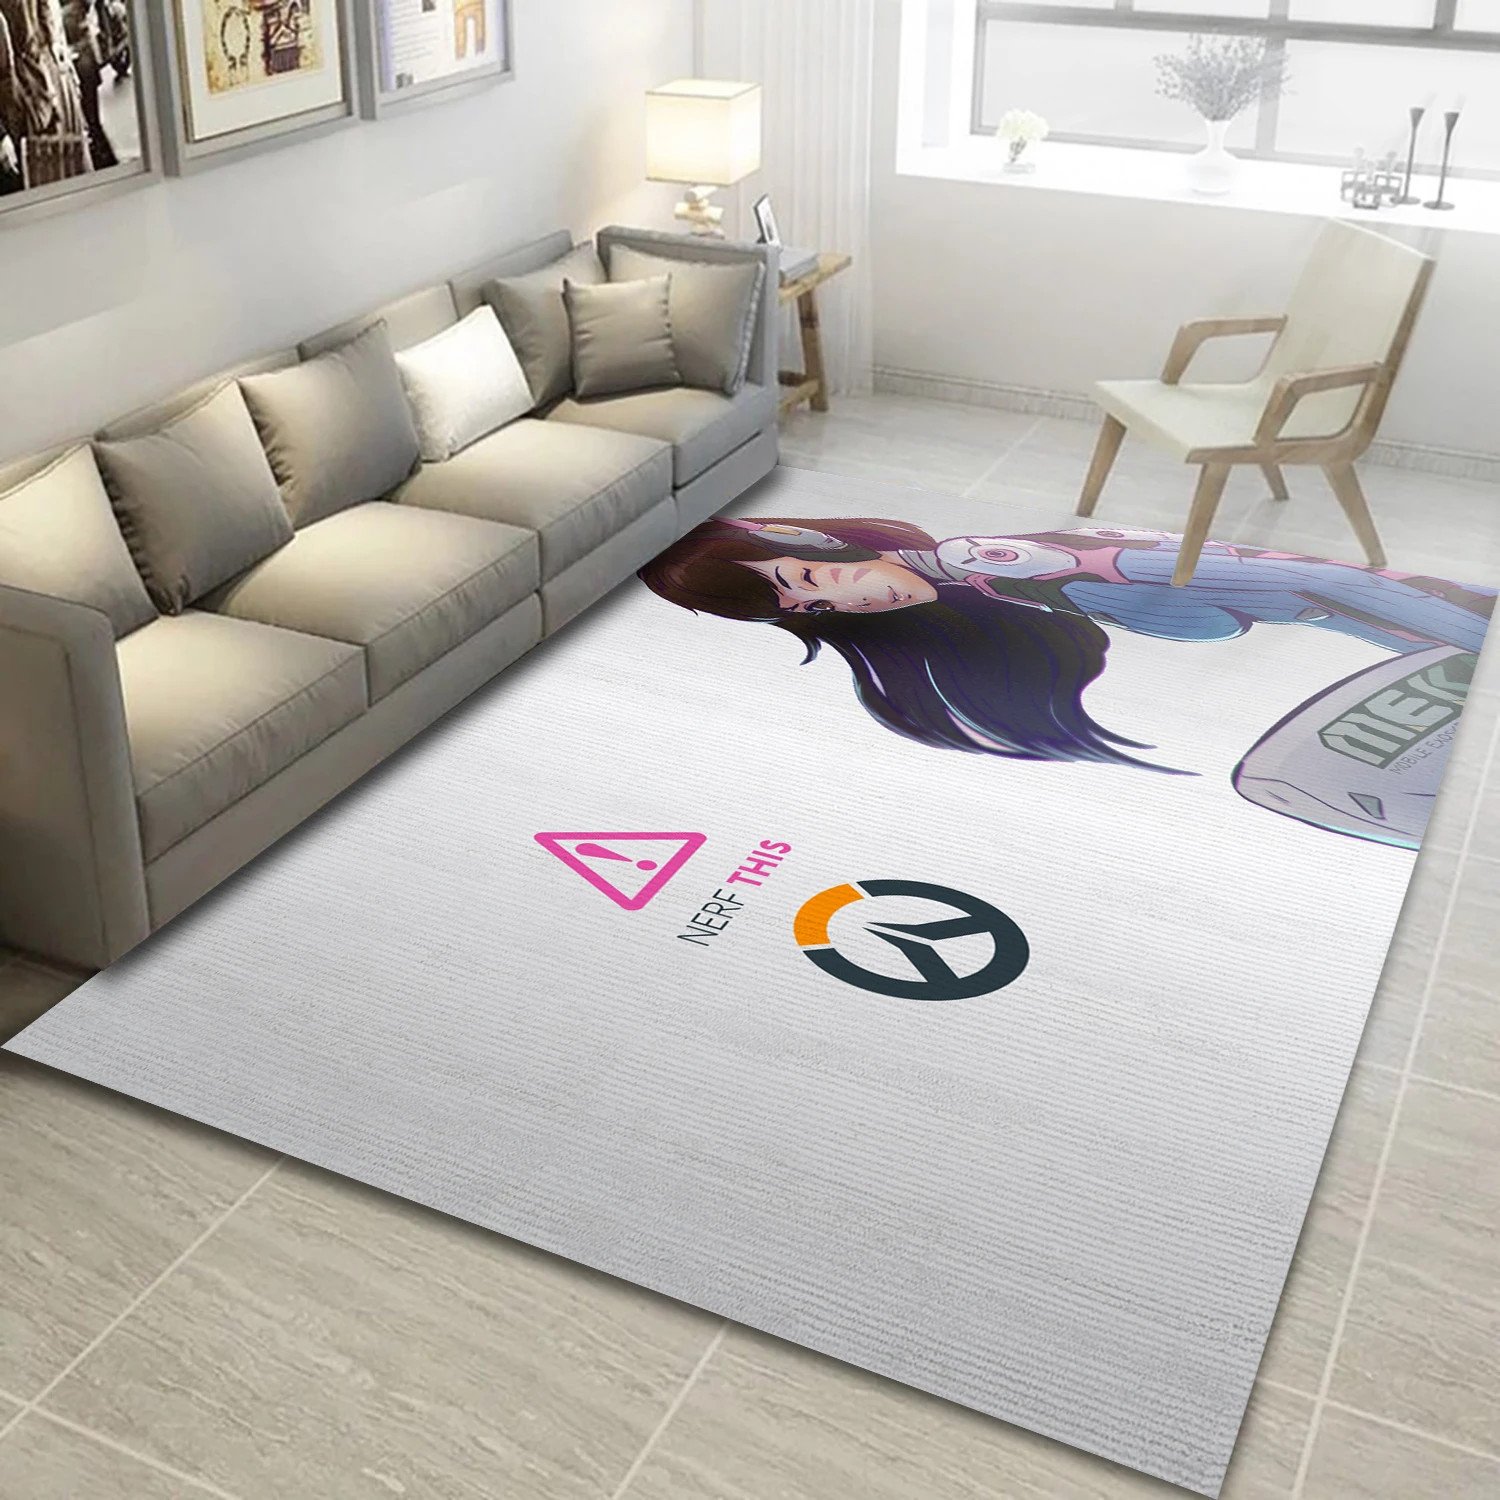 D Va Overwatch Game Area Rug Carpet, Bedroom Rug - Family Gift US Decor - Indoor Outdoor Rugs 3